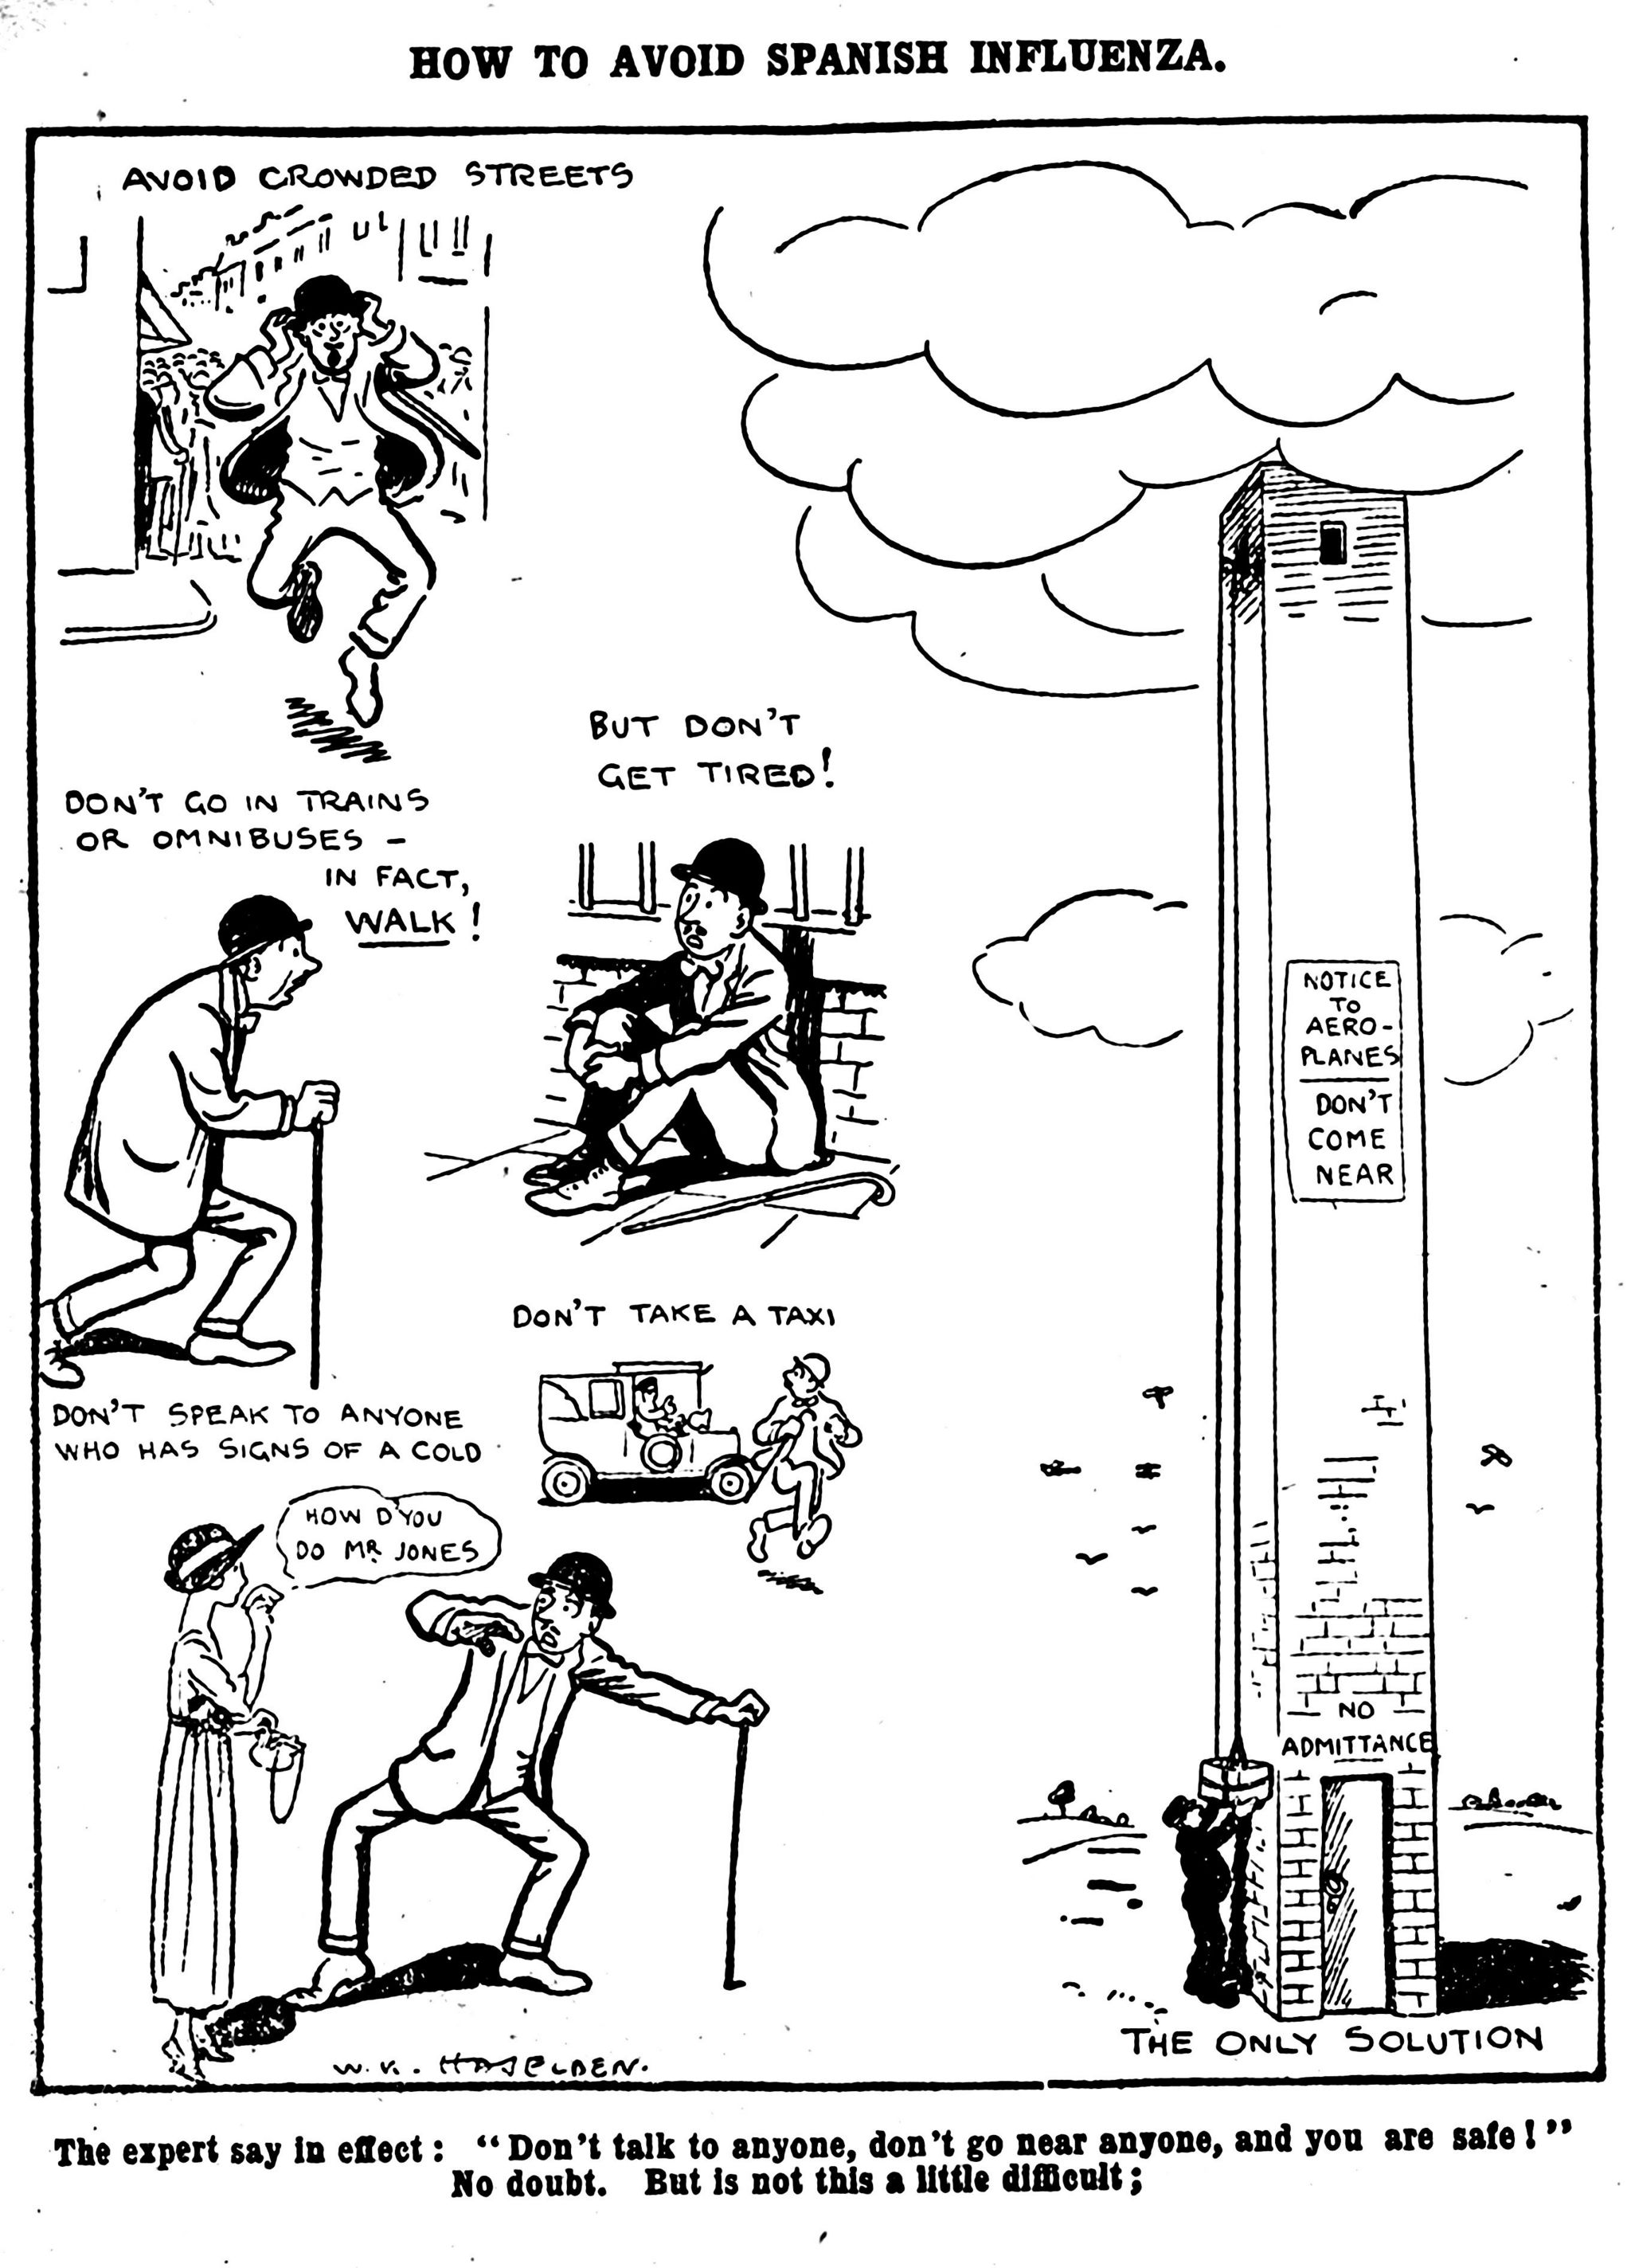 Daily Mirror cartoon, 1918